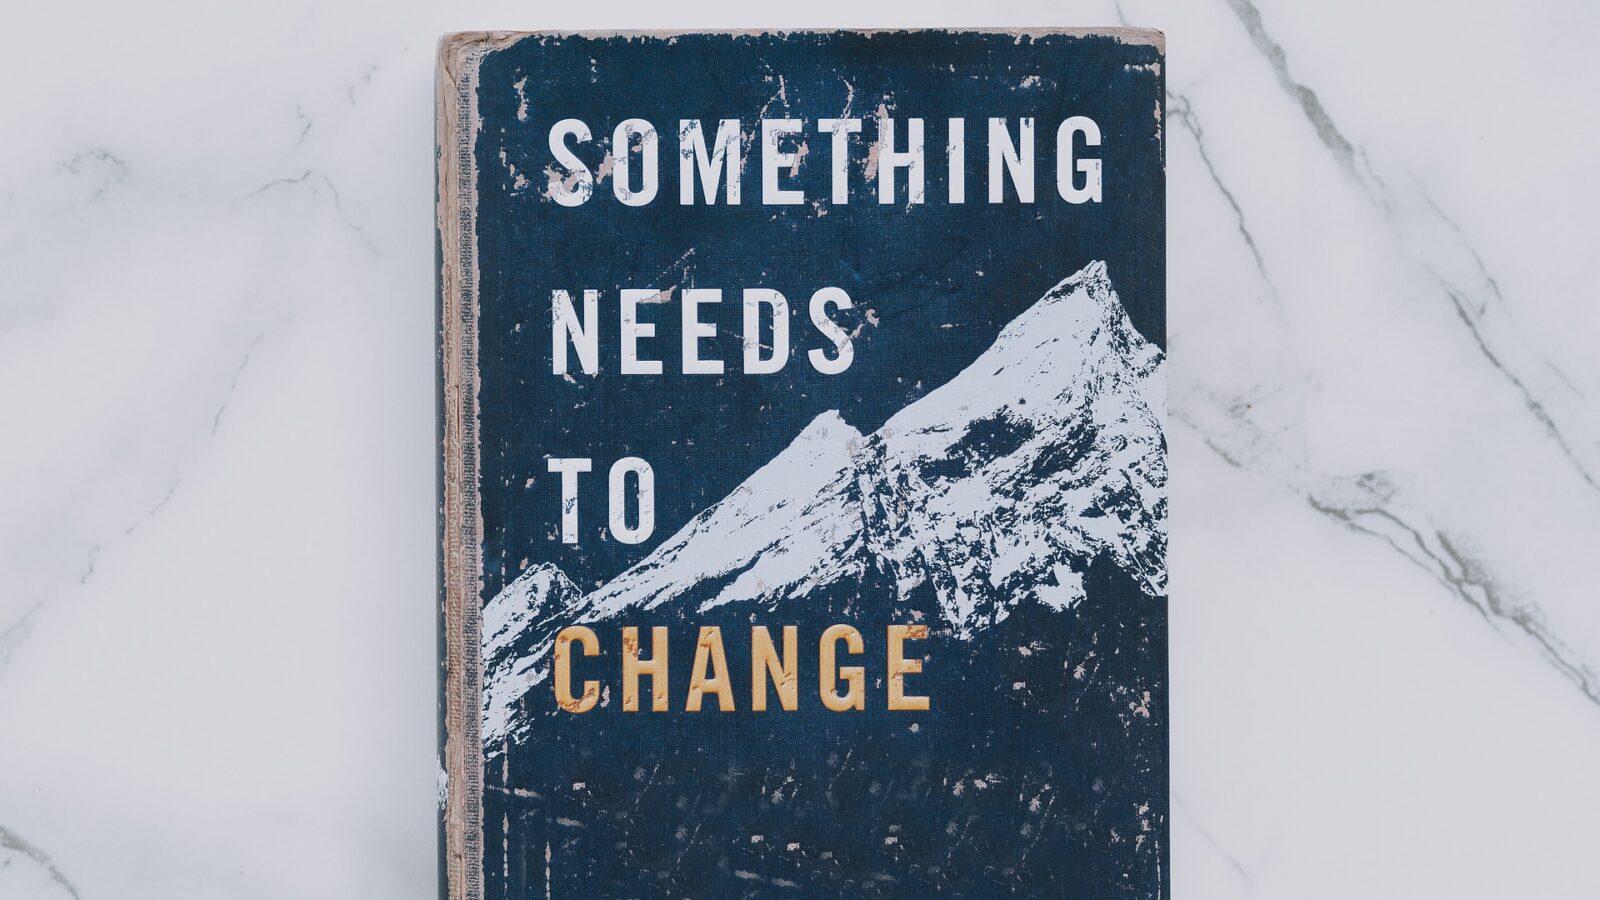 Buch mit dem Titel: Something needs to change. Passend zum Beitrag Wertschätzung Change Veränderung